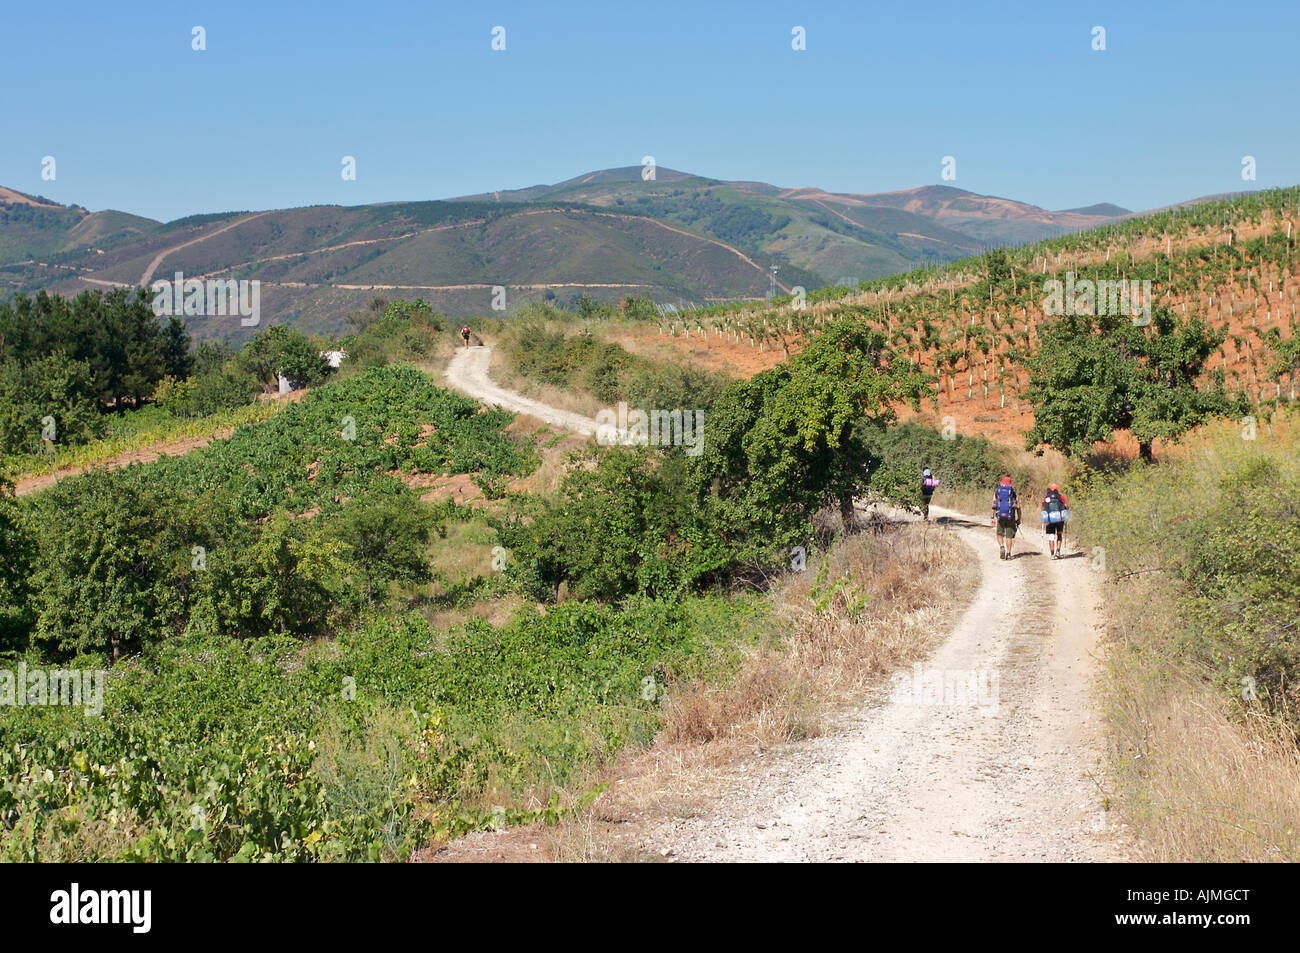 Camino de Santiago Villafranca del Bierzo Stock Photo